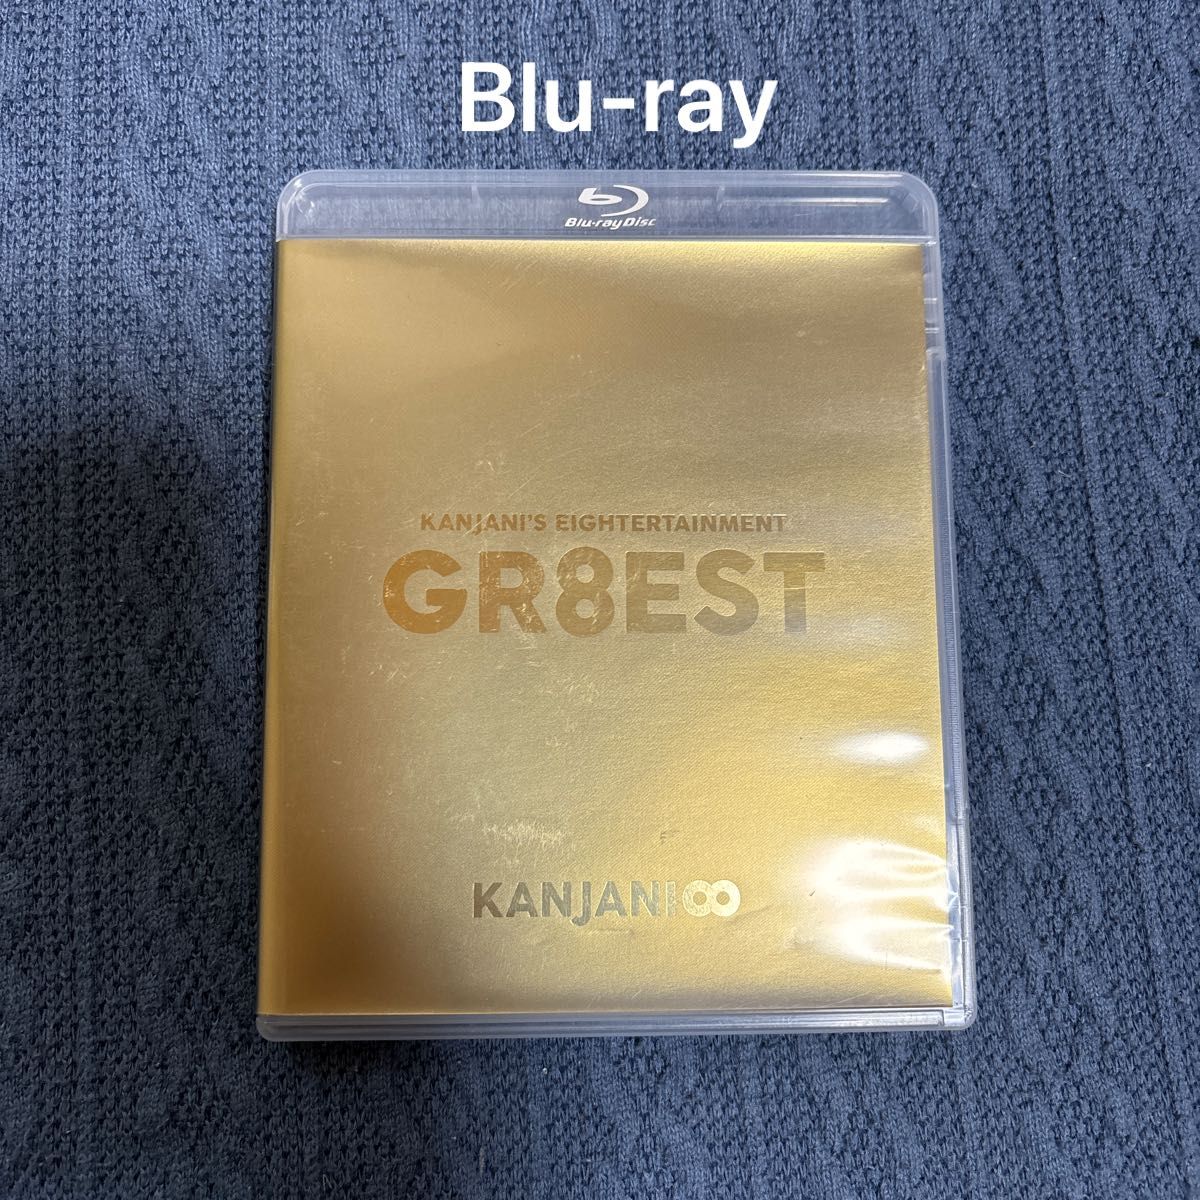 関ジャニsエイターテインメント GR8EST (Blu-ray通常盤) (特典なし)